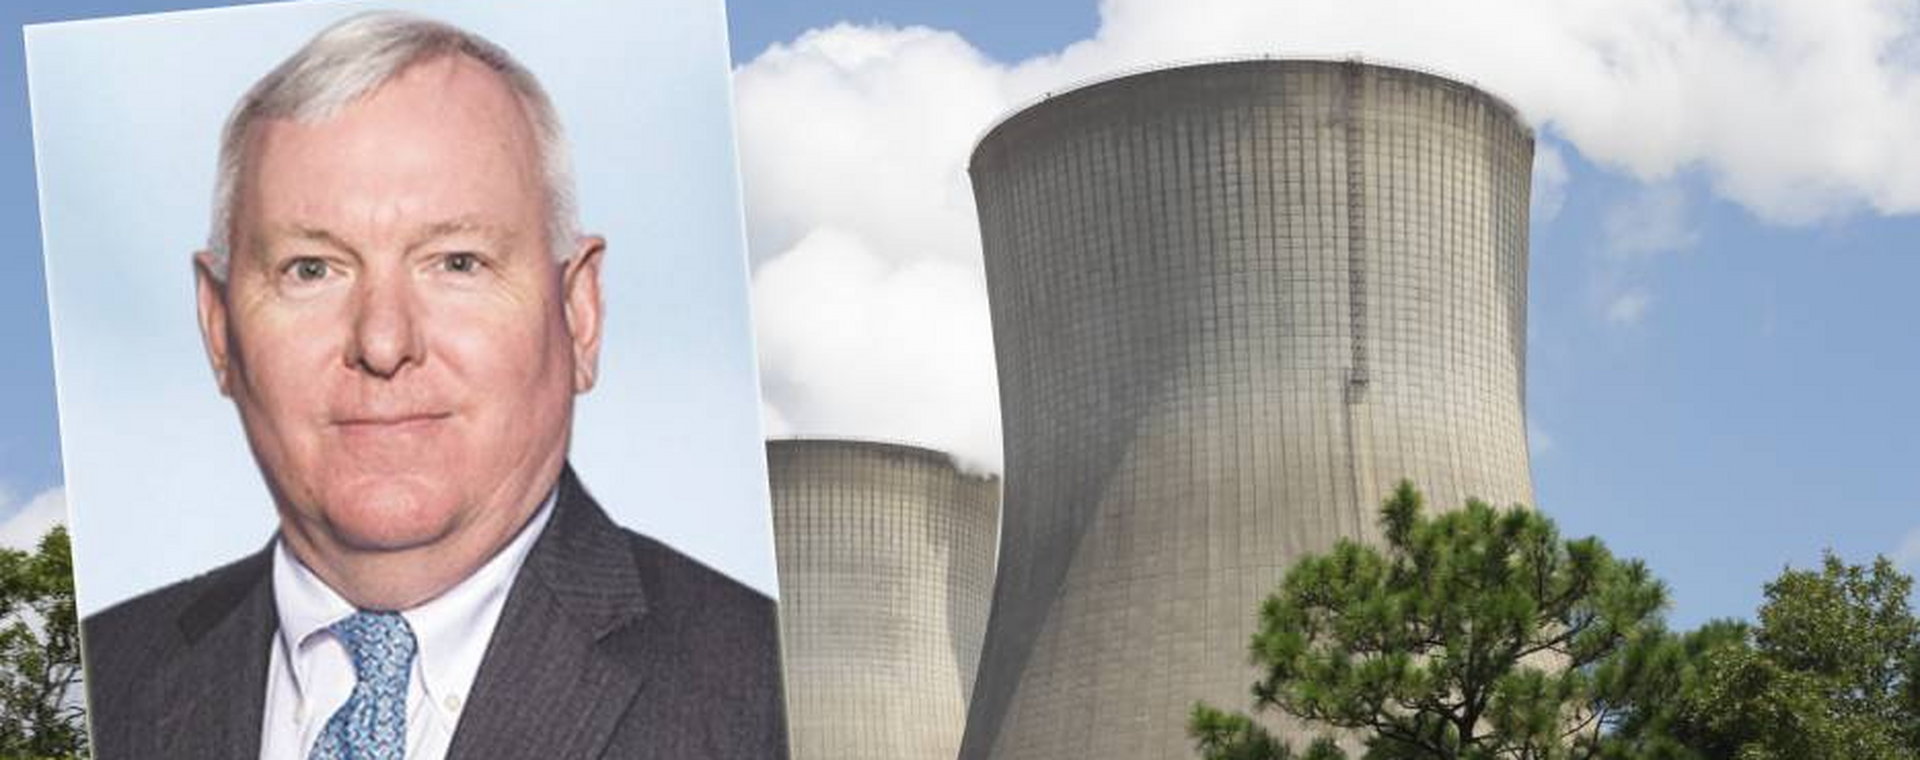 David Durham, przewodniczący ds. systemów energetycznych w Westinghouse. Część elektrowni jądrowej Vogtle w USA.